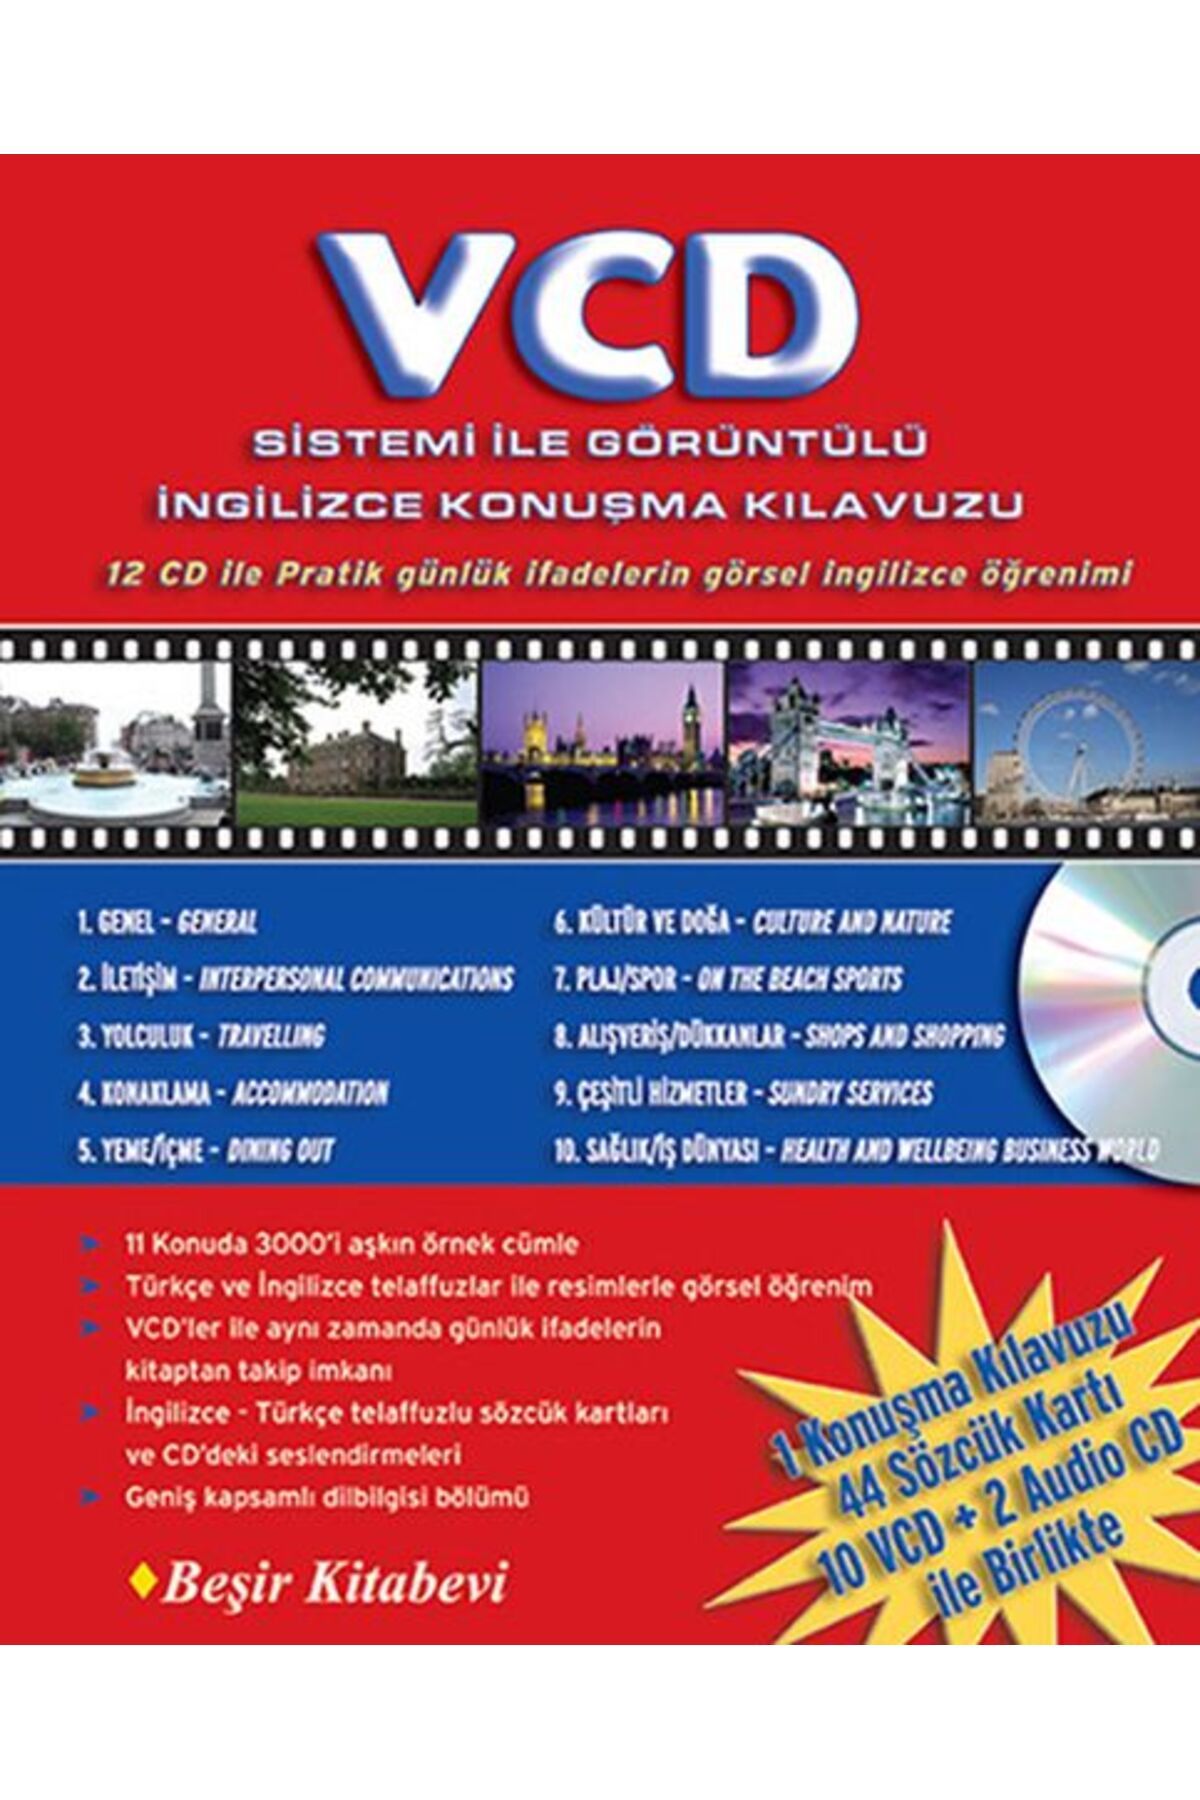 Beşir Kitabevi VCD Sistemi ile Görüntülü İngilizce Konuşma Kılavuzu (12 CD ile)